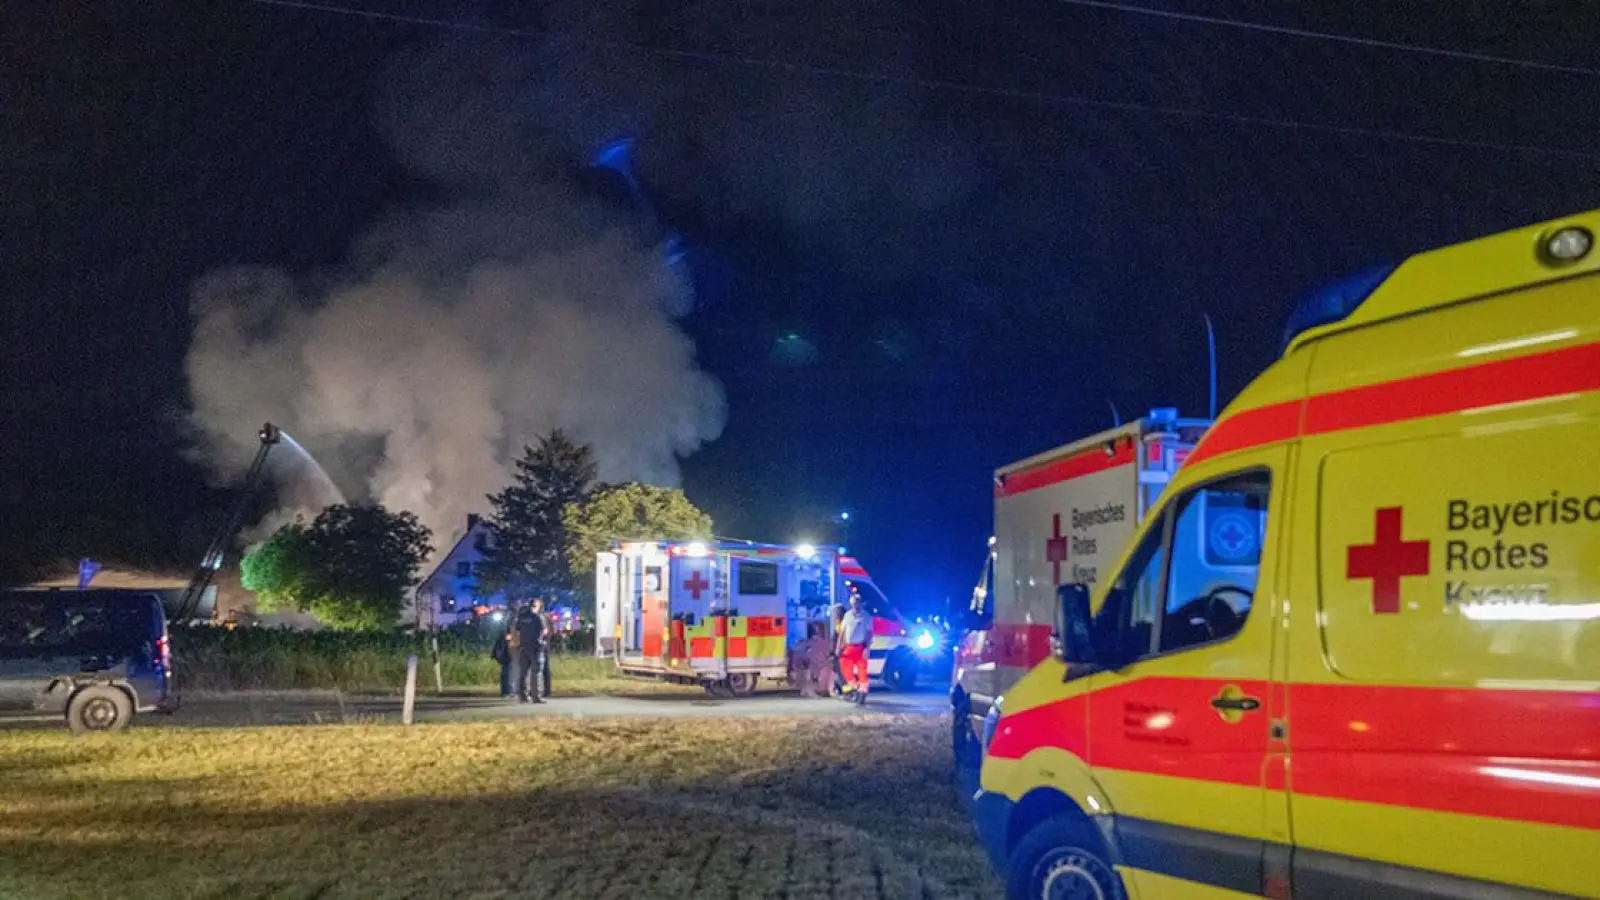 Lokalnachrichten in Bayreuth: Großeinsatz bei Brand in Bauernhof (Foto: red)